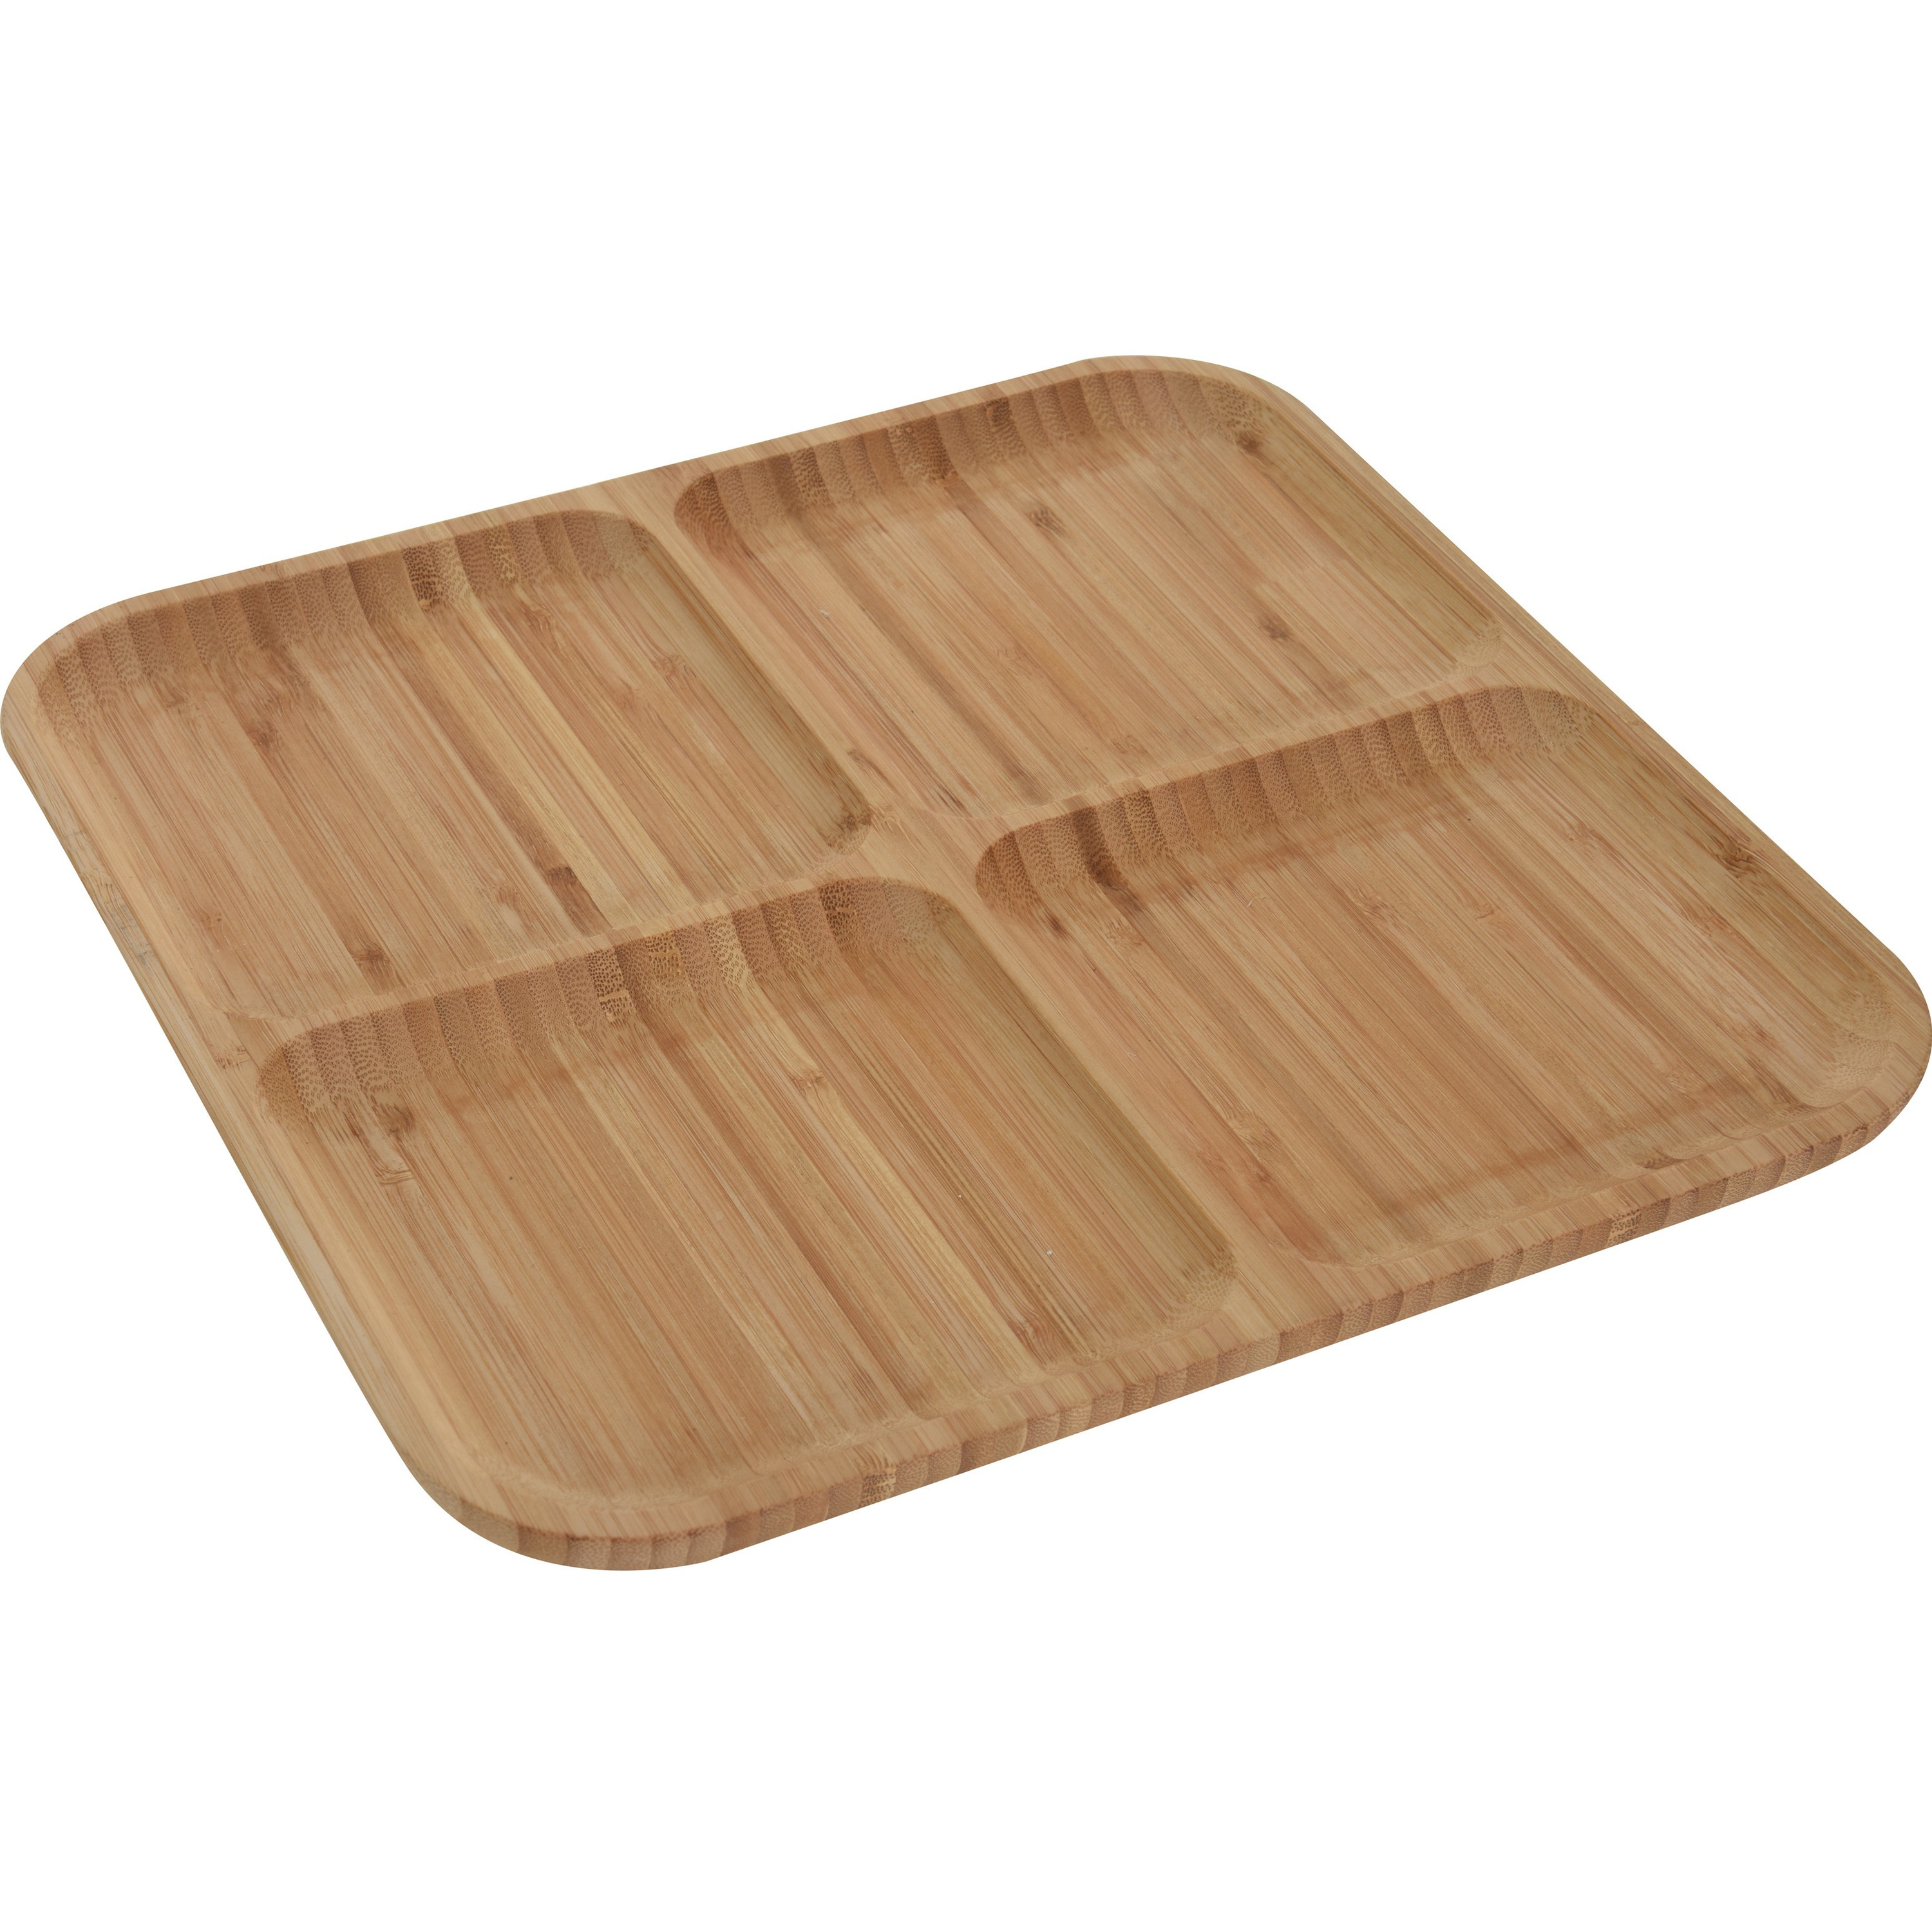 1x Serveerplanken-borden 4-vaks van bamboe hout 30 cm